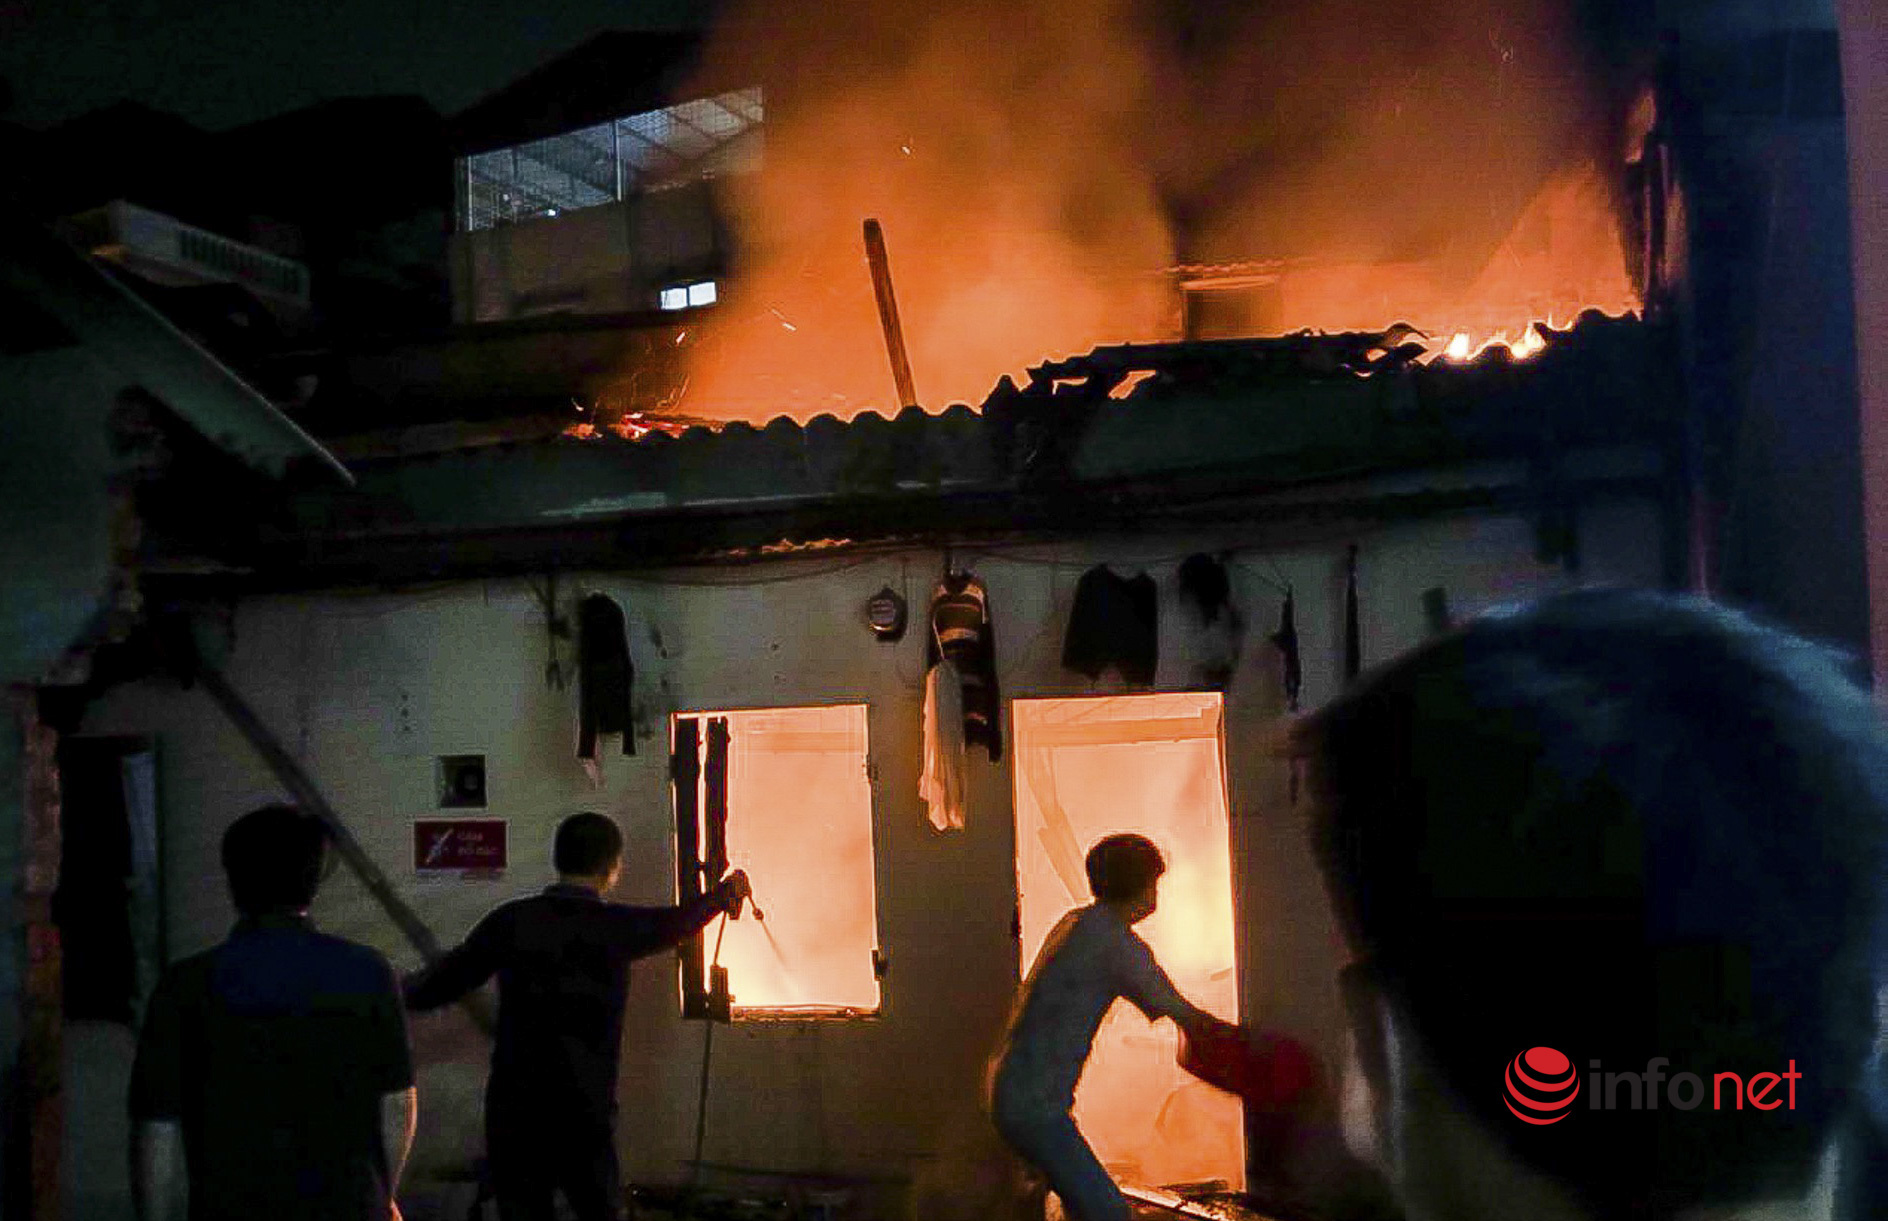 Hà Nội: Cháy lớn, phát ra tiếng nổ to tại khu trọ giữa đêm